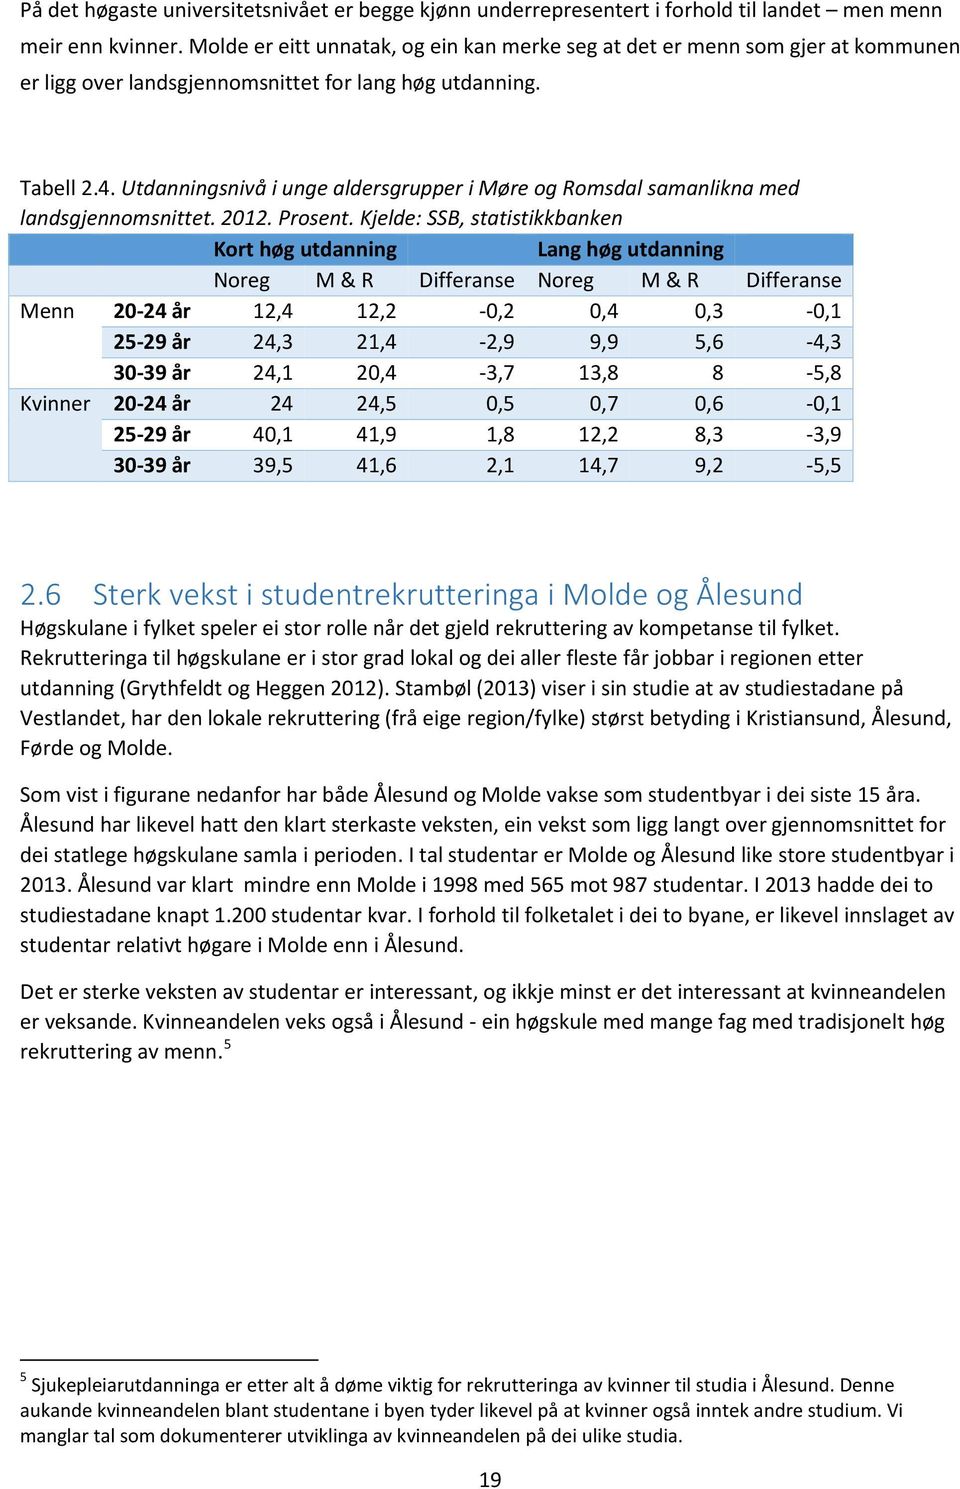 Utdanningsnivå i unge aldersgrupper i Møre og Romsdal samanlikna med landsgjennomsnittet. 2012. Prosent.